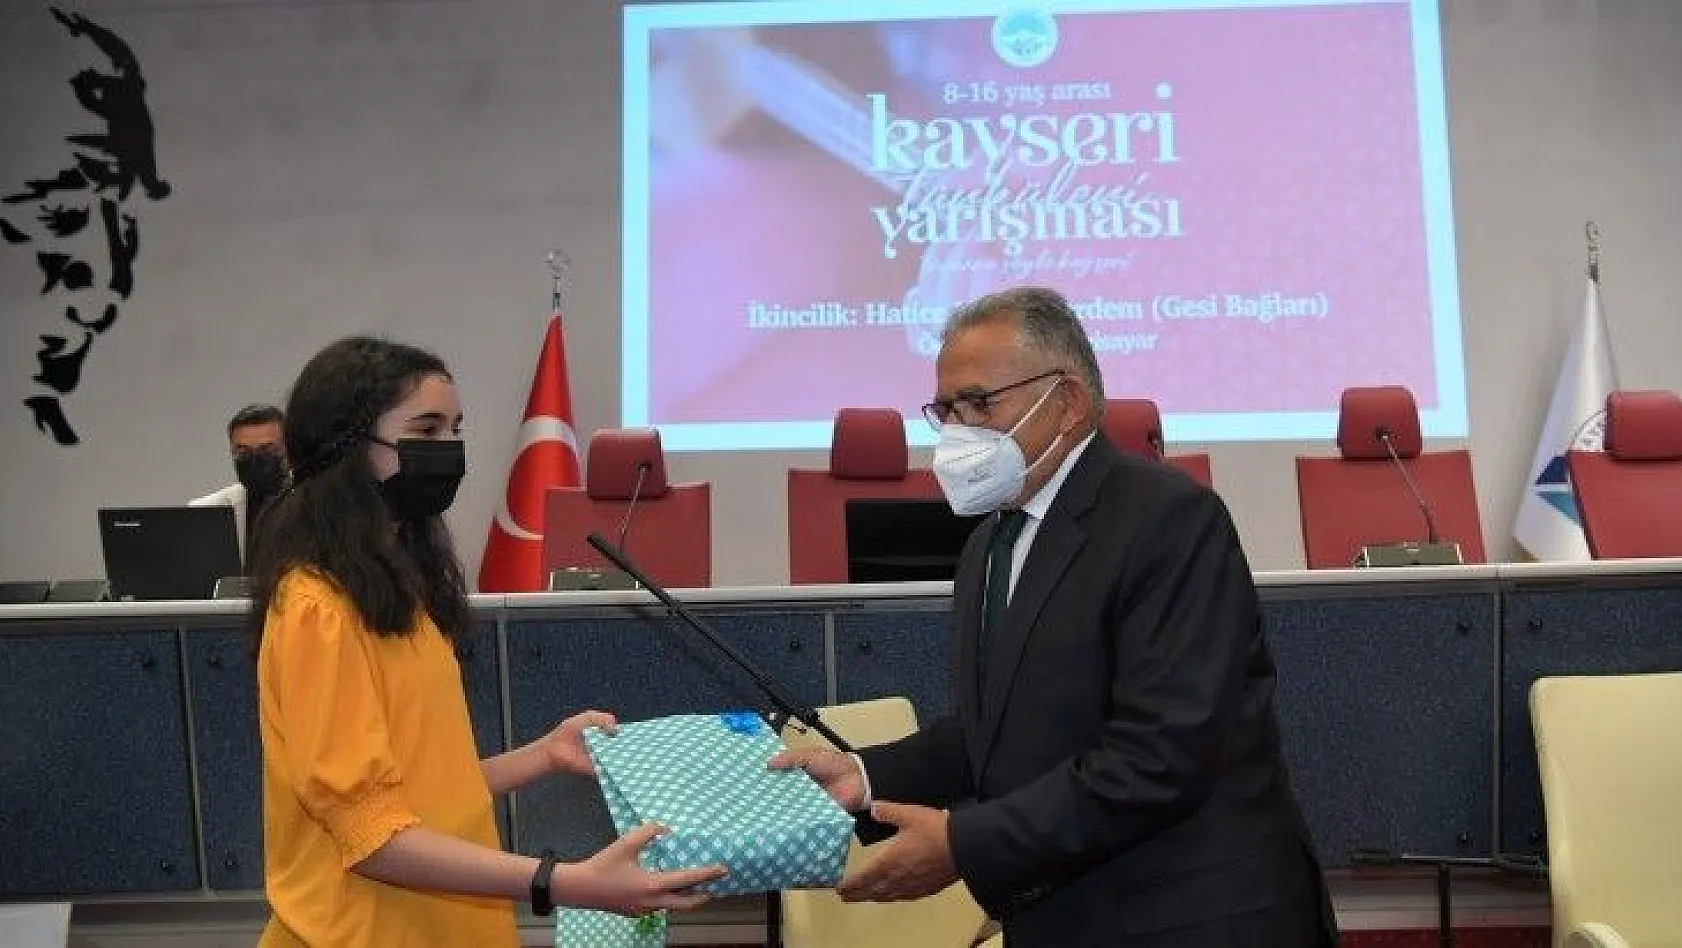 Büyükkılıç, Kayseri Türkileri Yarışması Ödül Törenine Katıldı